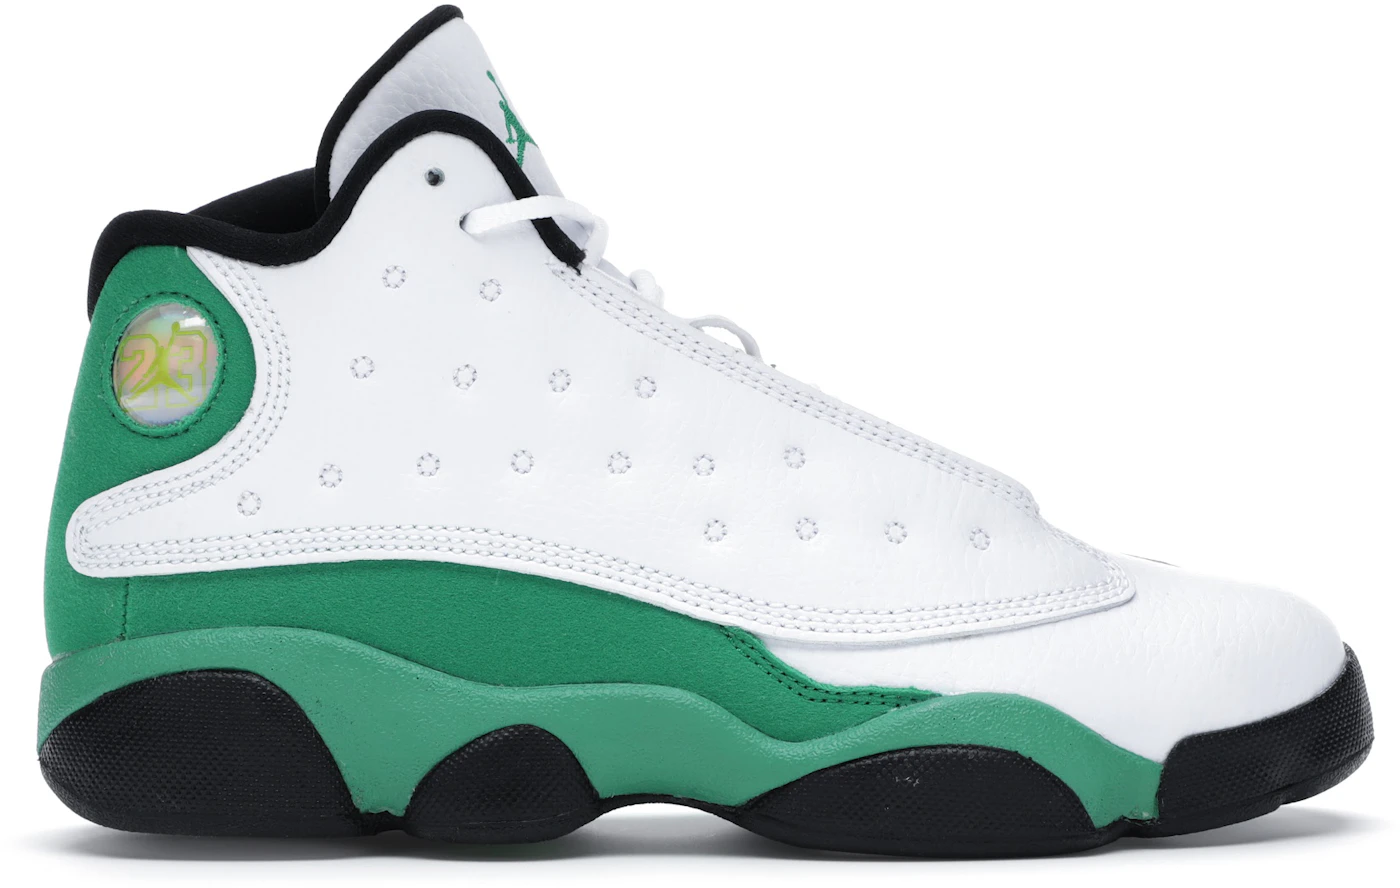 Jordan 13 Retro White Lucky Green Men's - DB6537-113/414571-113 - US